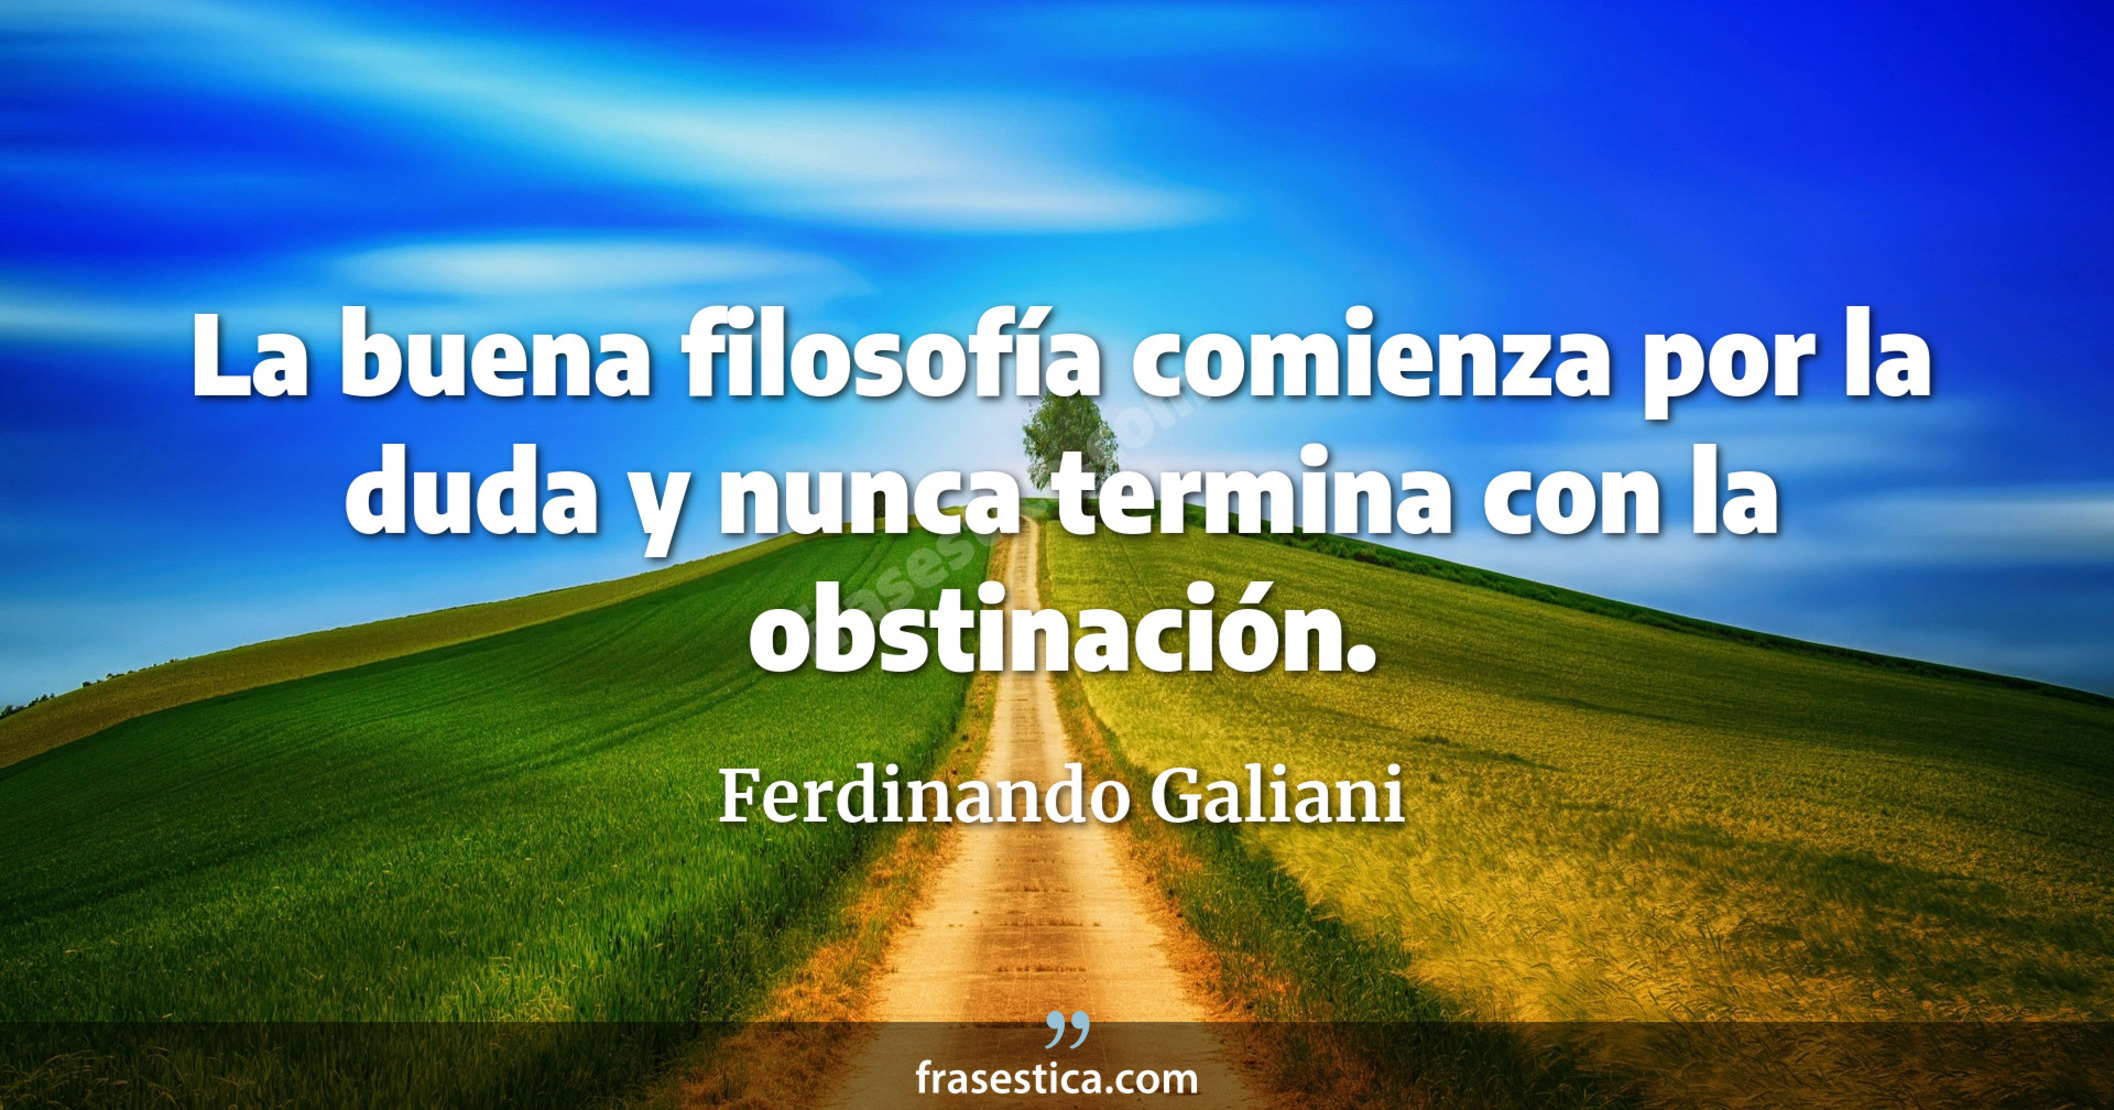 La buena filosofía comienza por la duda y nunca termina con la obstinación. - Ferdinando Galiani